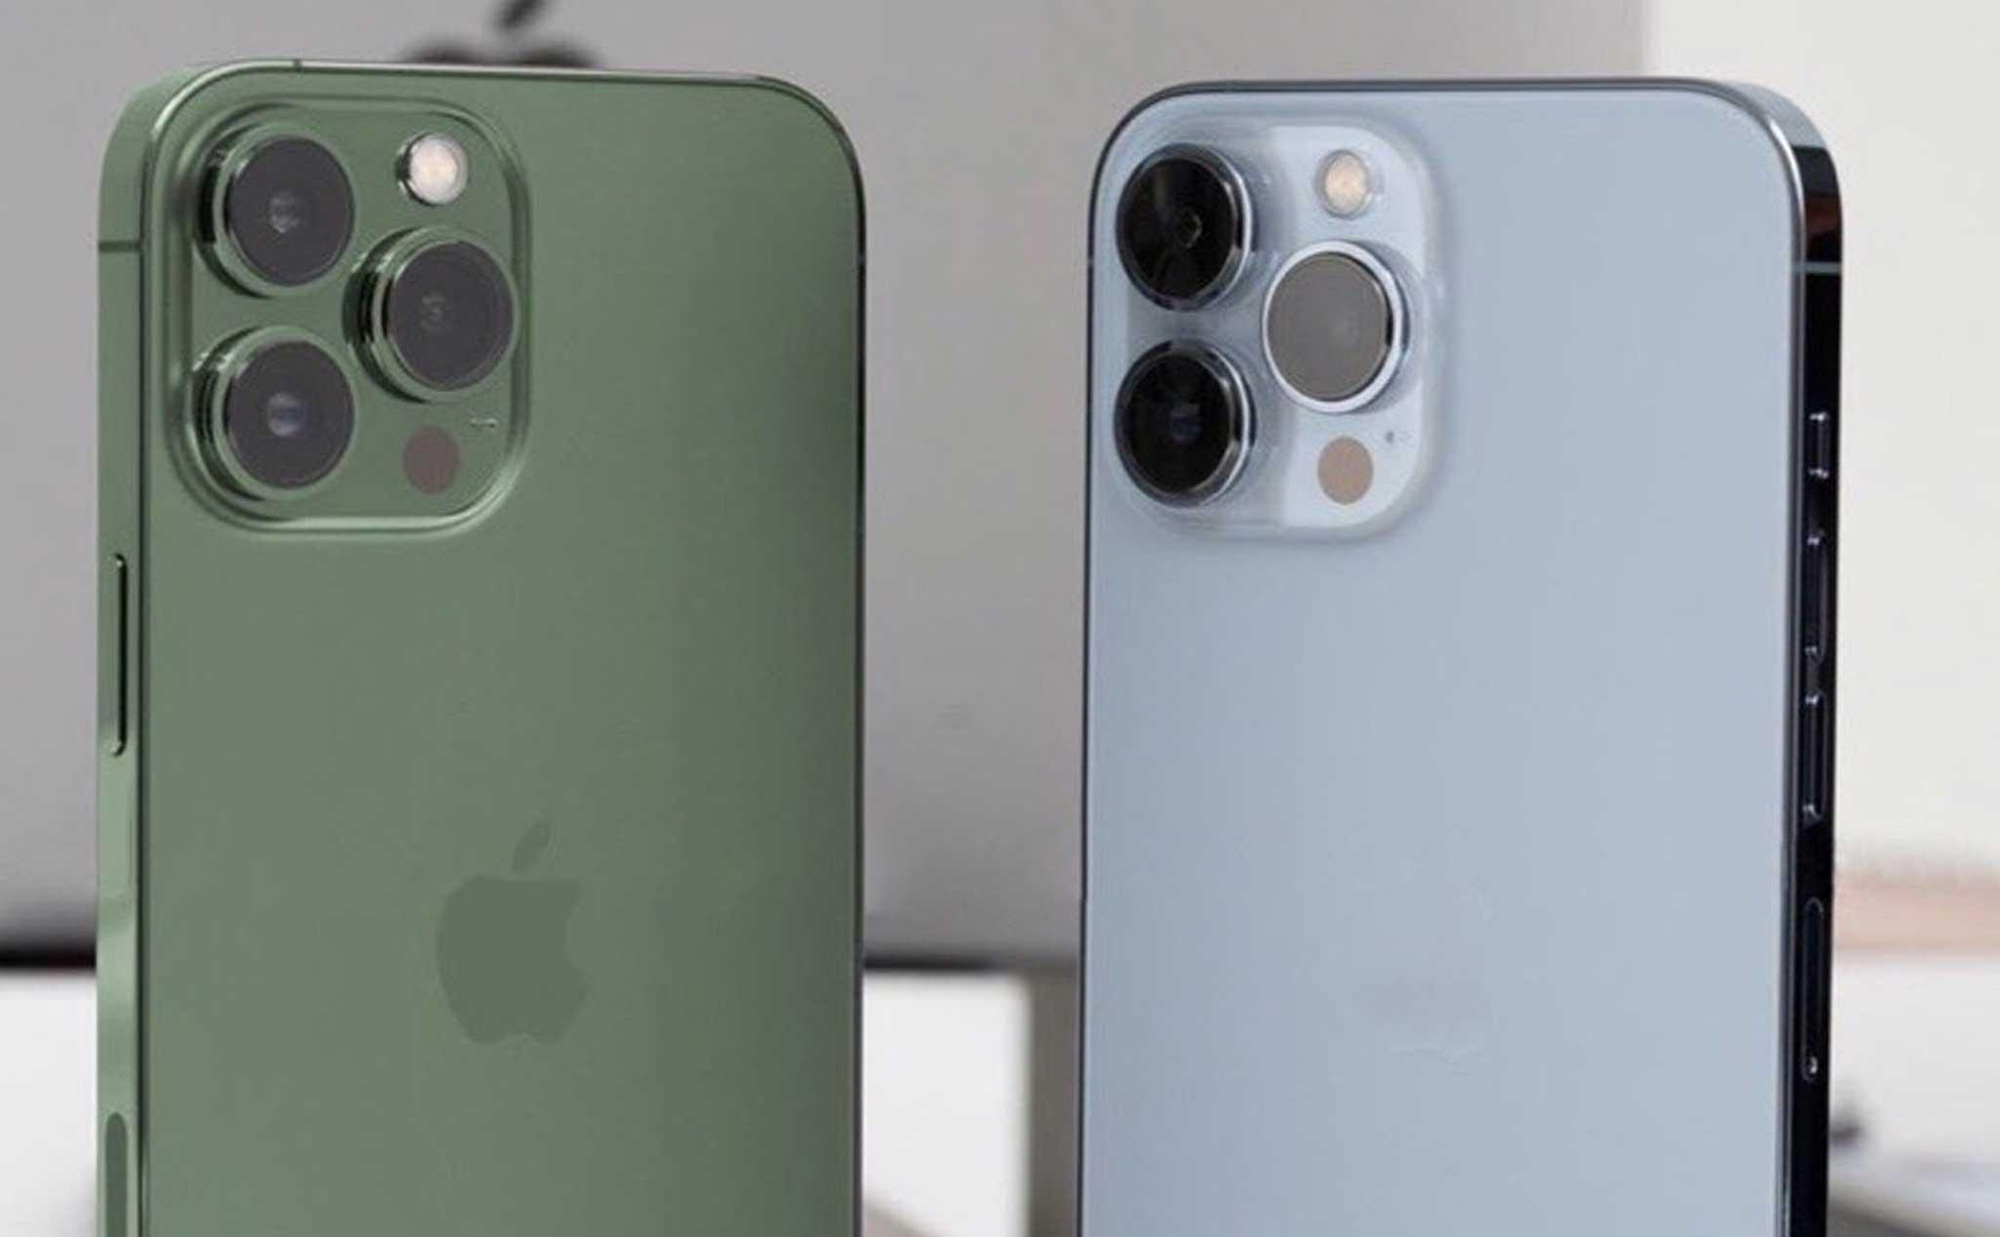 iPhone 13 màu xanh lá cây sẽ khiến bạn phát cuồng vì ngoại hình độc đáo và thời trang. Với màn hình lớn và camera đỉnh cao, chiếc điện thoại này là lựa chọn hoàn hảo cho những người yêu thích sự khác biệt. Bấm vào hình ảnh để tham khảo chi tiết sản phẩm.